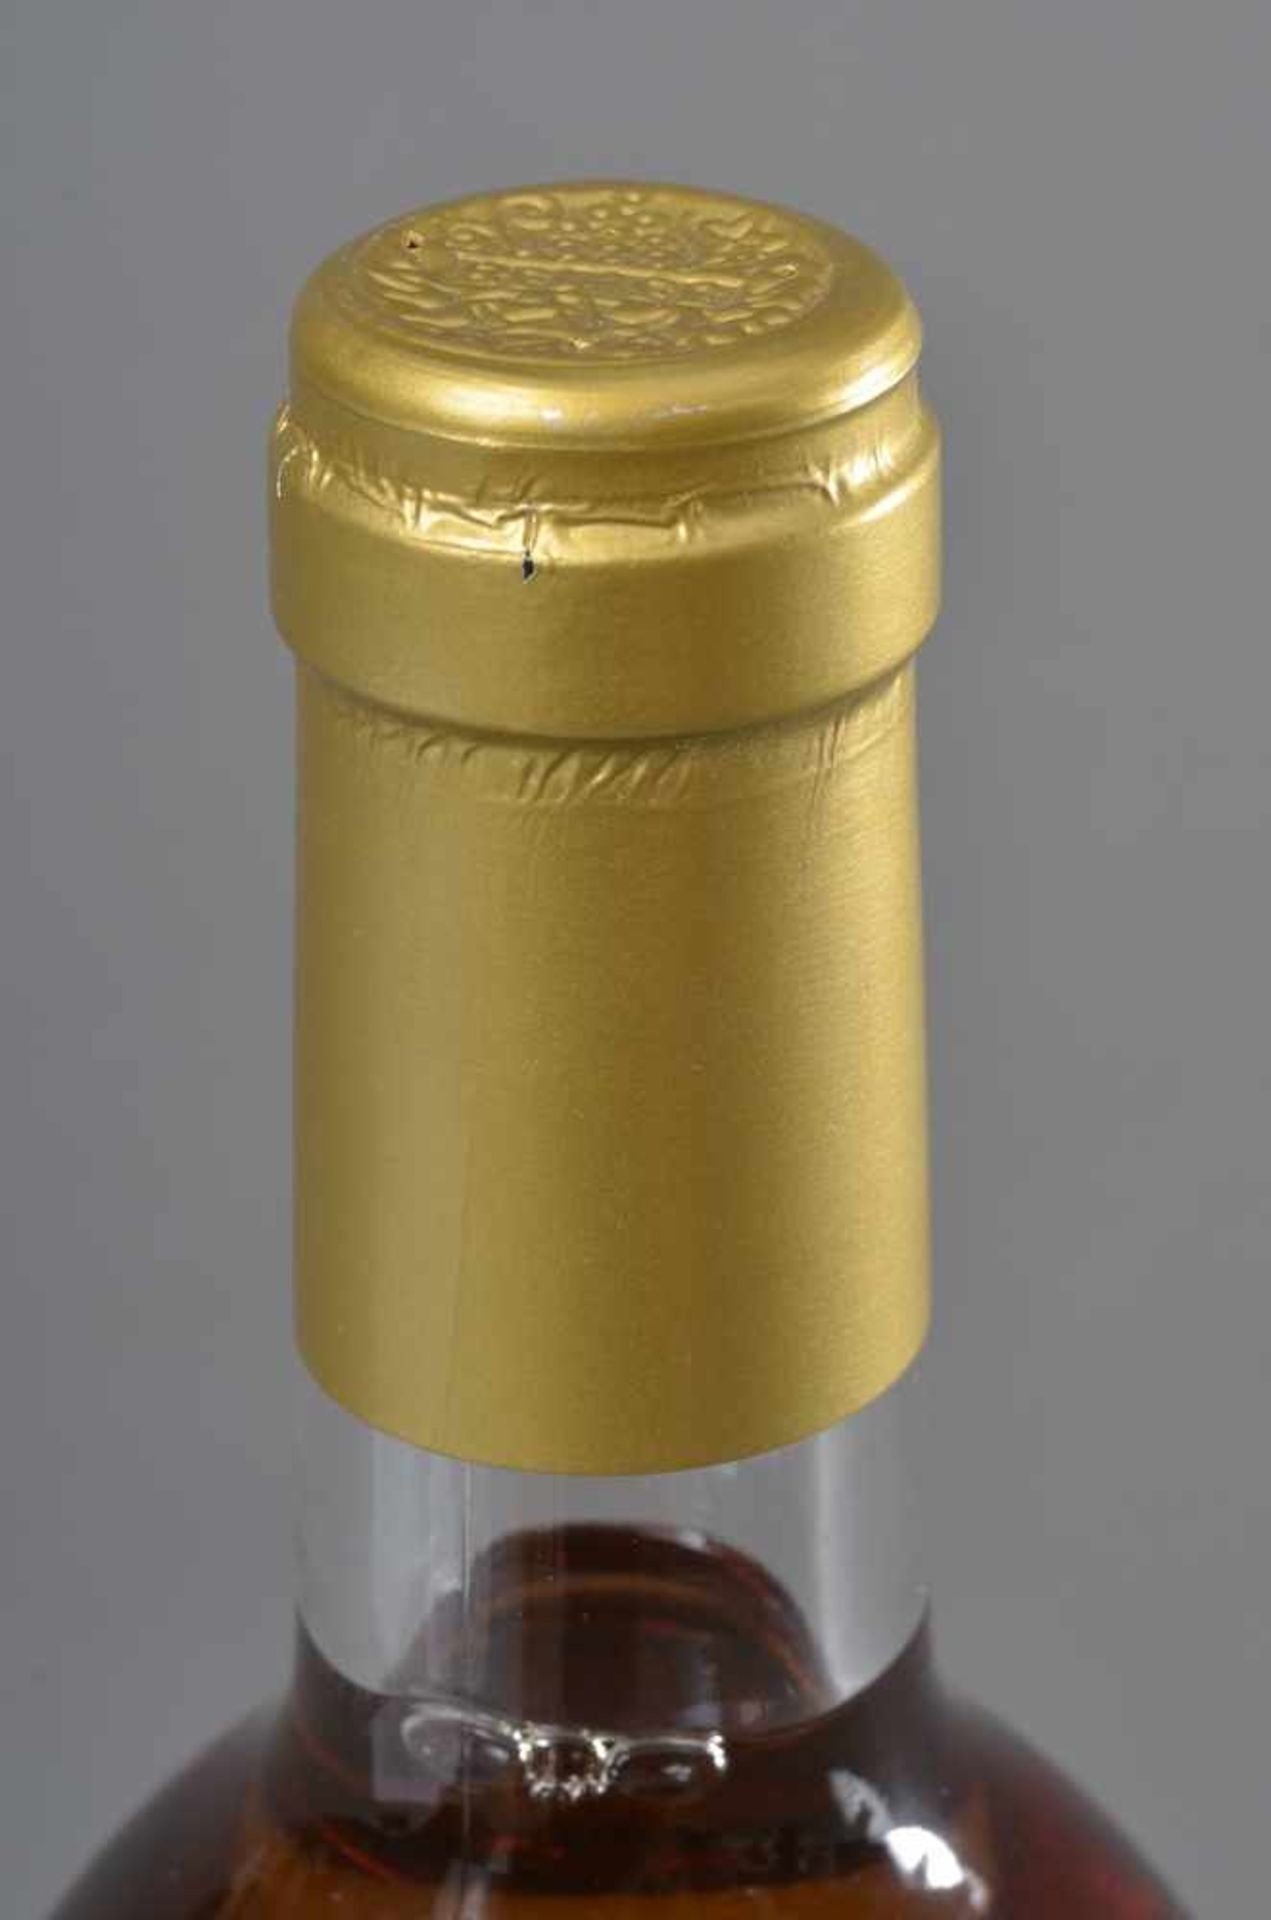 Flasche 1998 Chateau Haut-Placey, Sauternes, Sauternes Süsswein, Frankreich, Schlossabzug, 750ml - Bild 3 aus 4